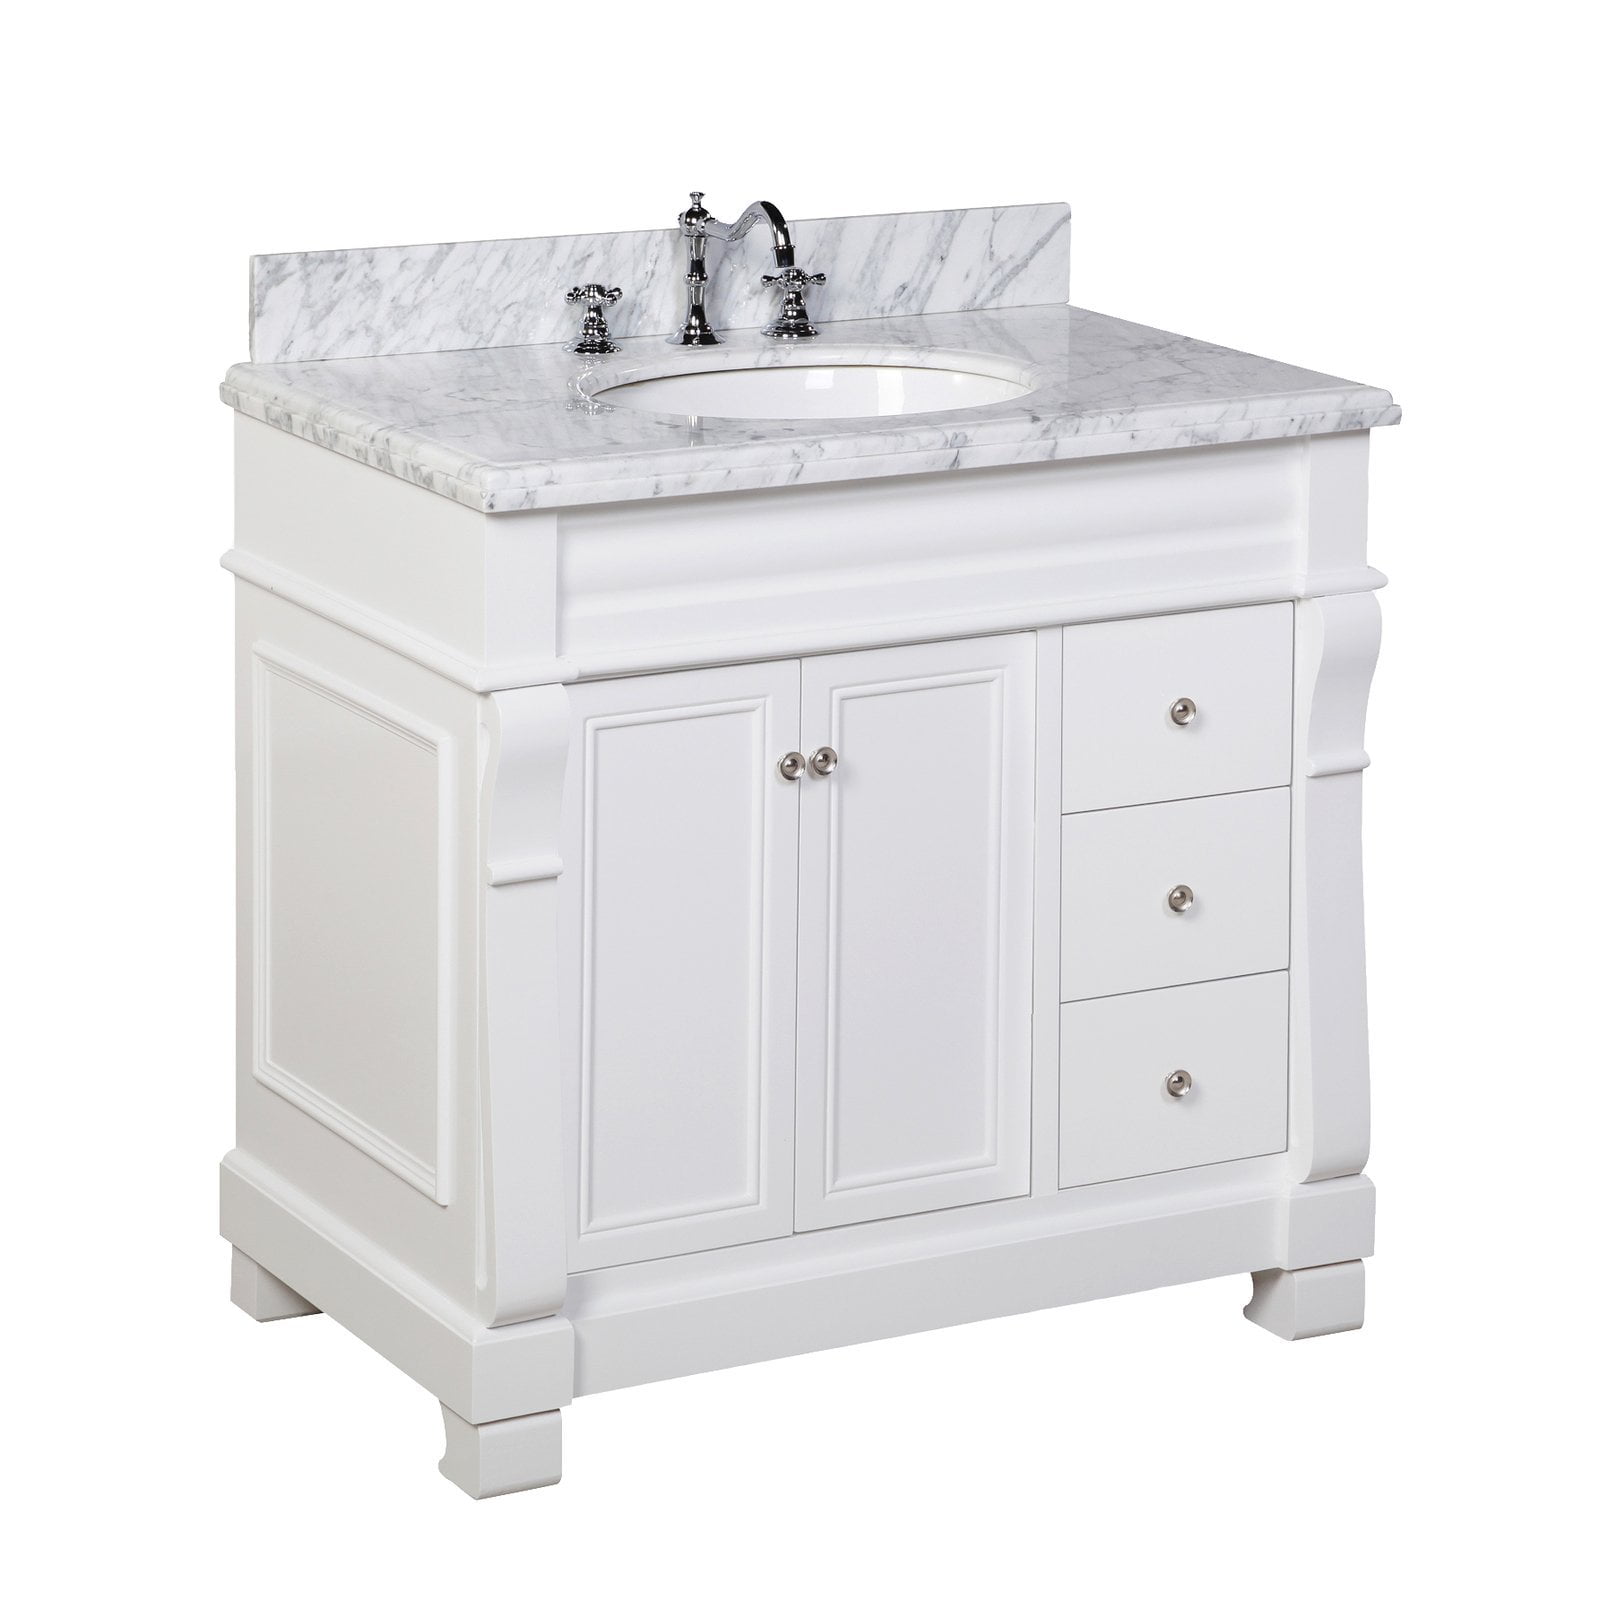 Westminster 36 Bathroom Vanity With, 36 White Bathroom Vanity With Carrara Marble Top